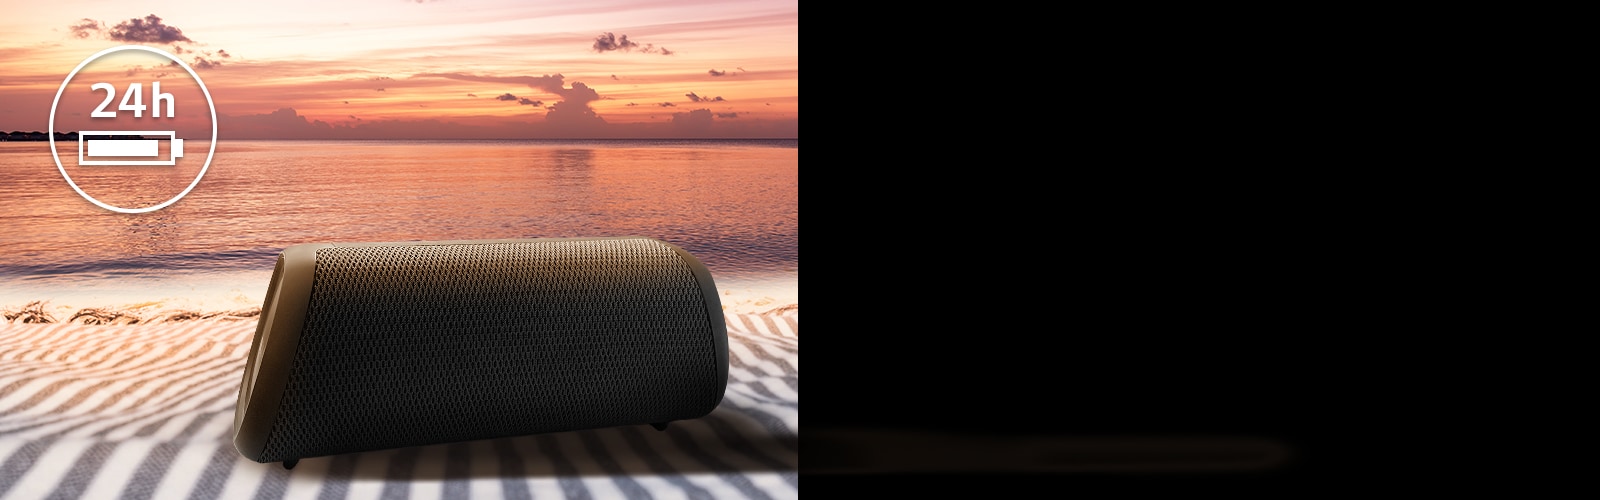 La Bocina se coloca sobre una toalla de playa. Delante de la bocina, se muestra la puesta de sol en la playa para ilustrar que este altavoz se puede reproducir hasta 24 horas.